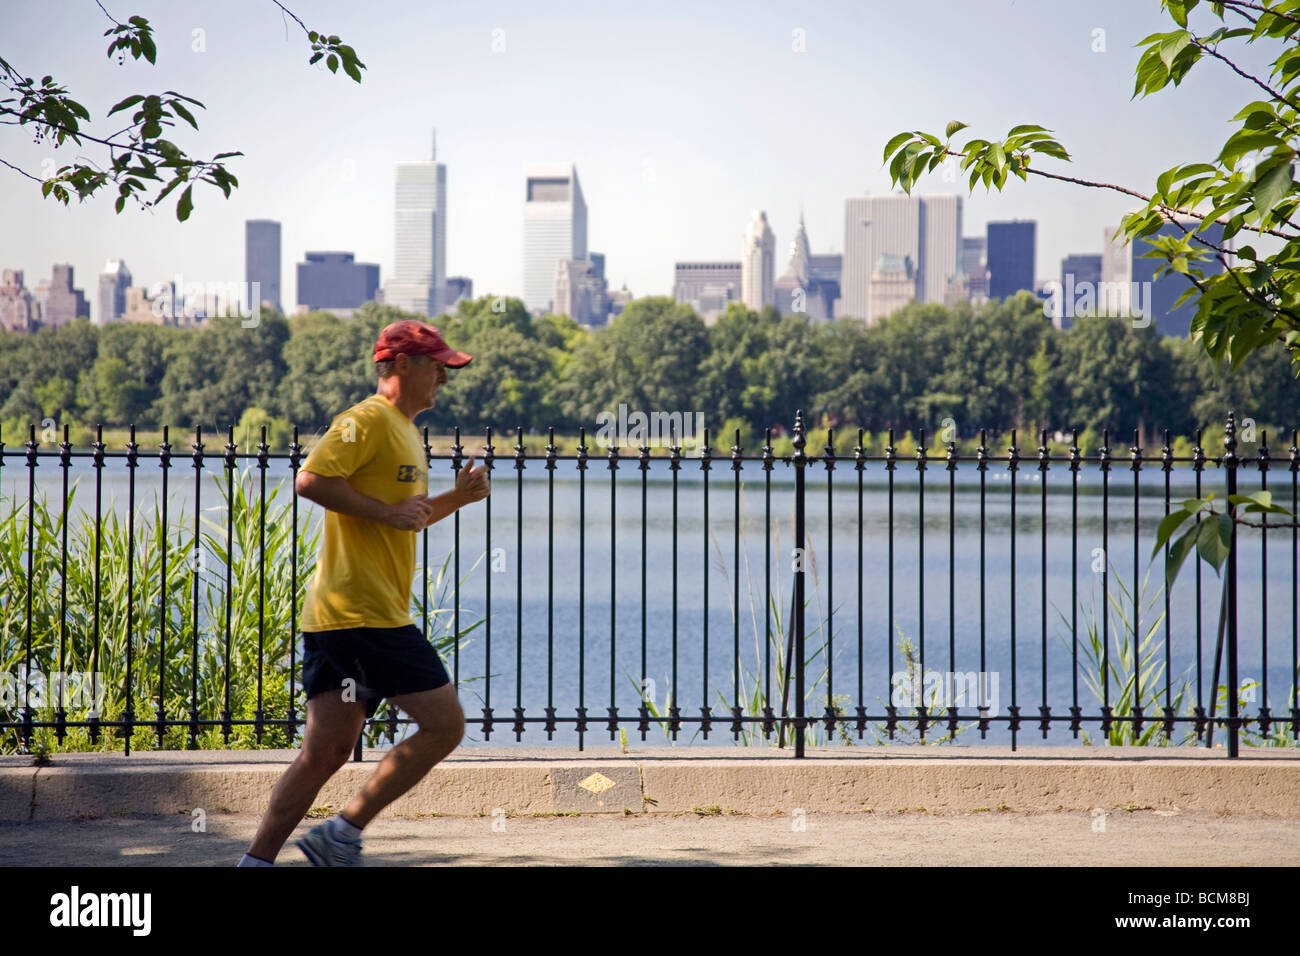 Réservoir de Central Park piste de jogging (1,5 miles), Manhattan, New York Banque D'Images